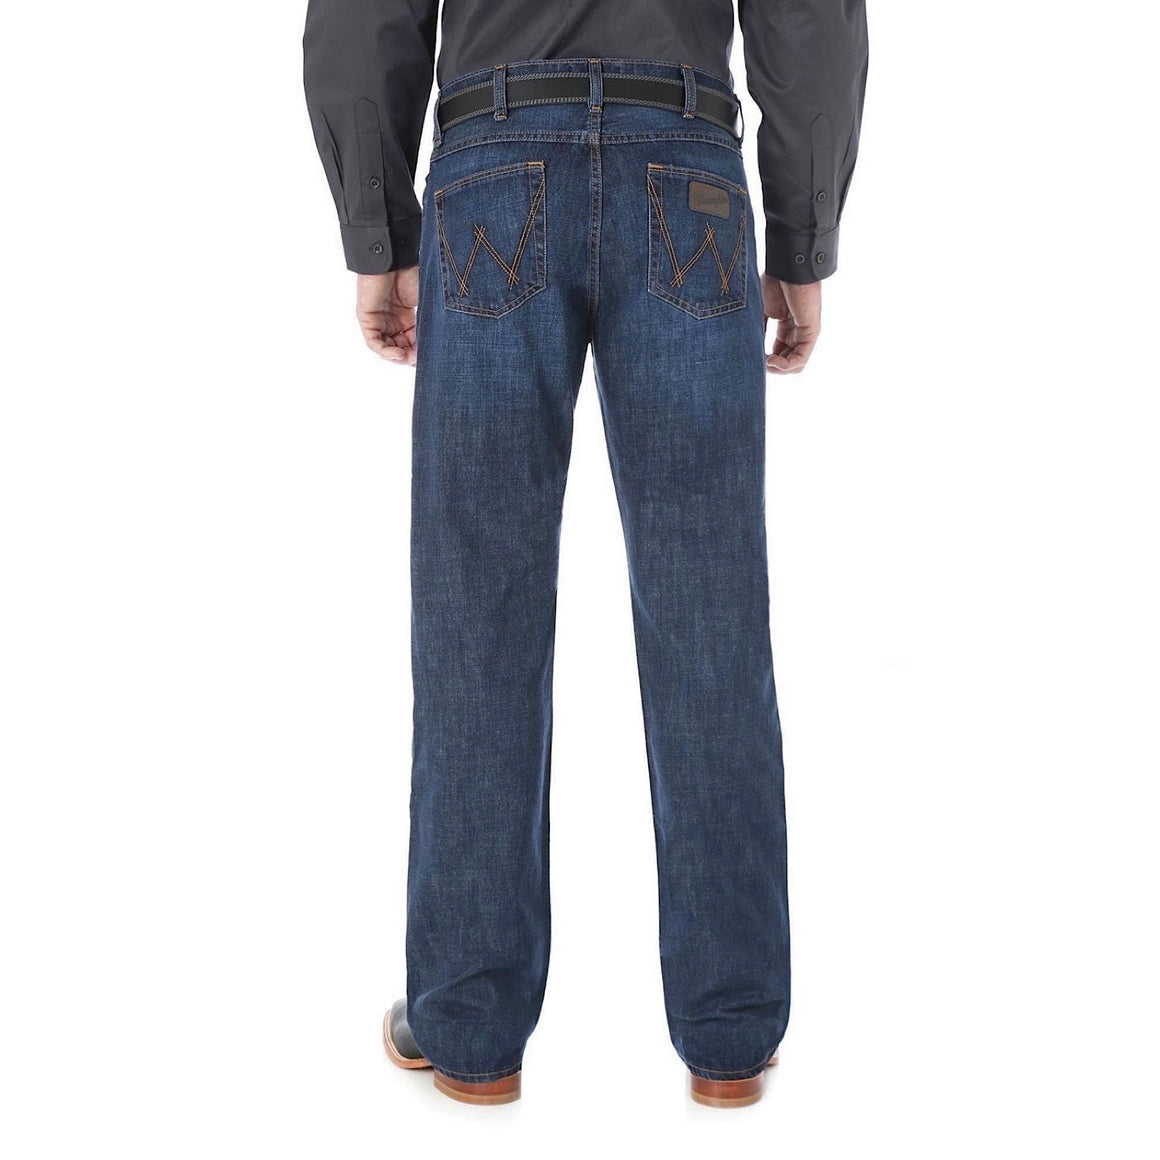 Buy Wrangler Mens Jeans - The Stable Door